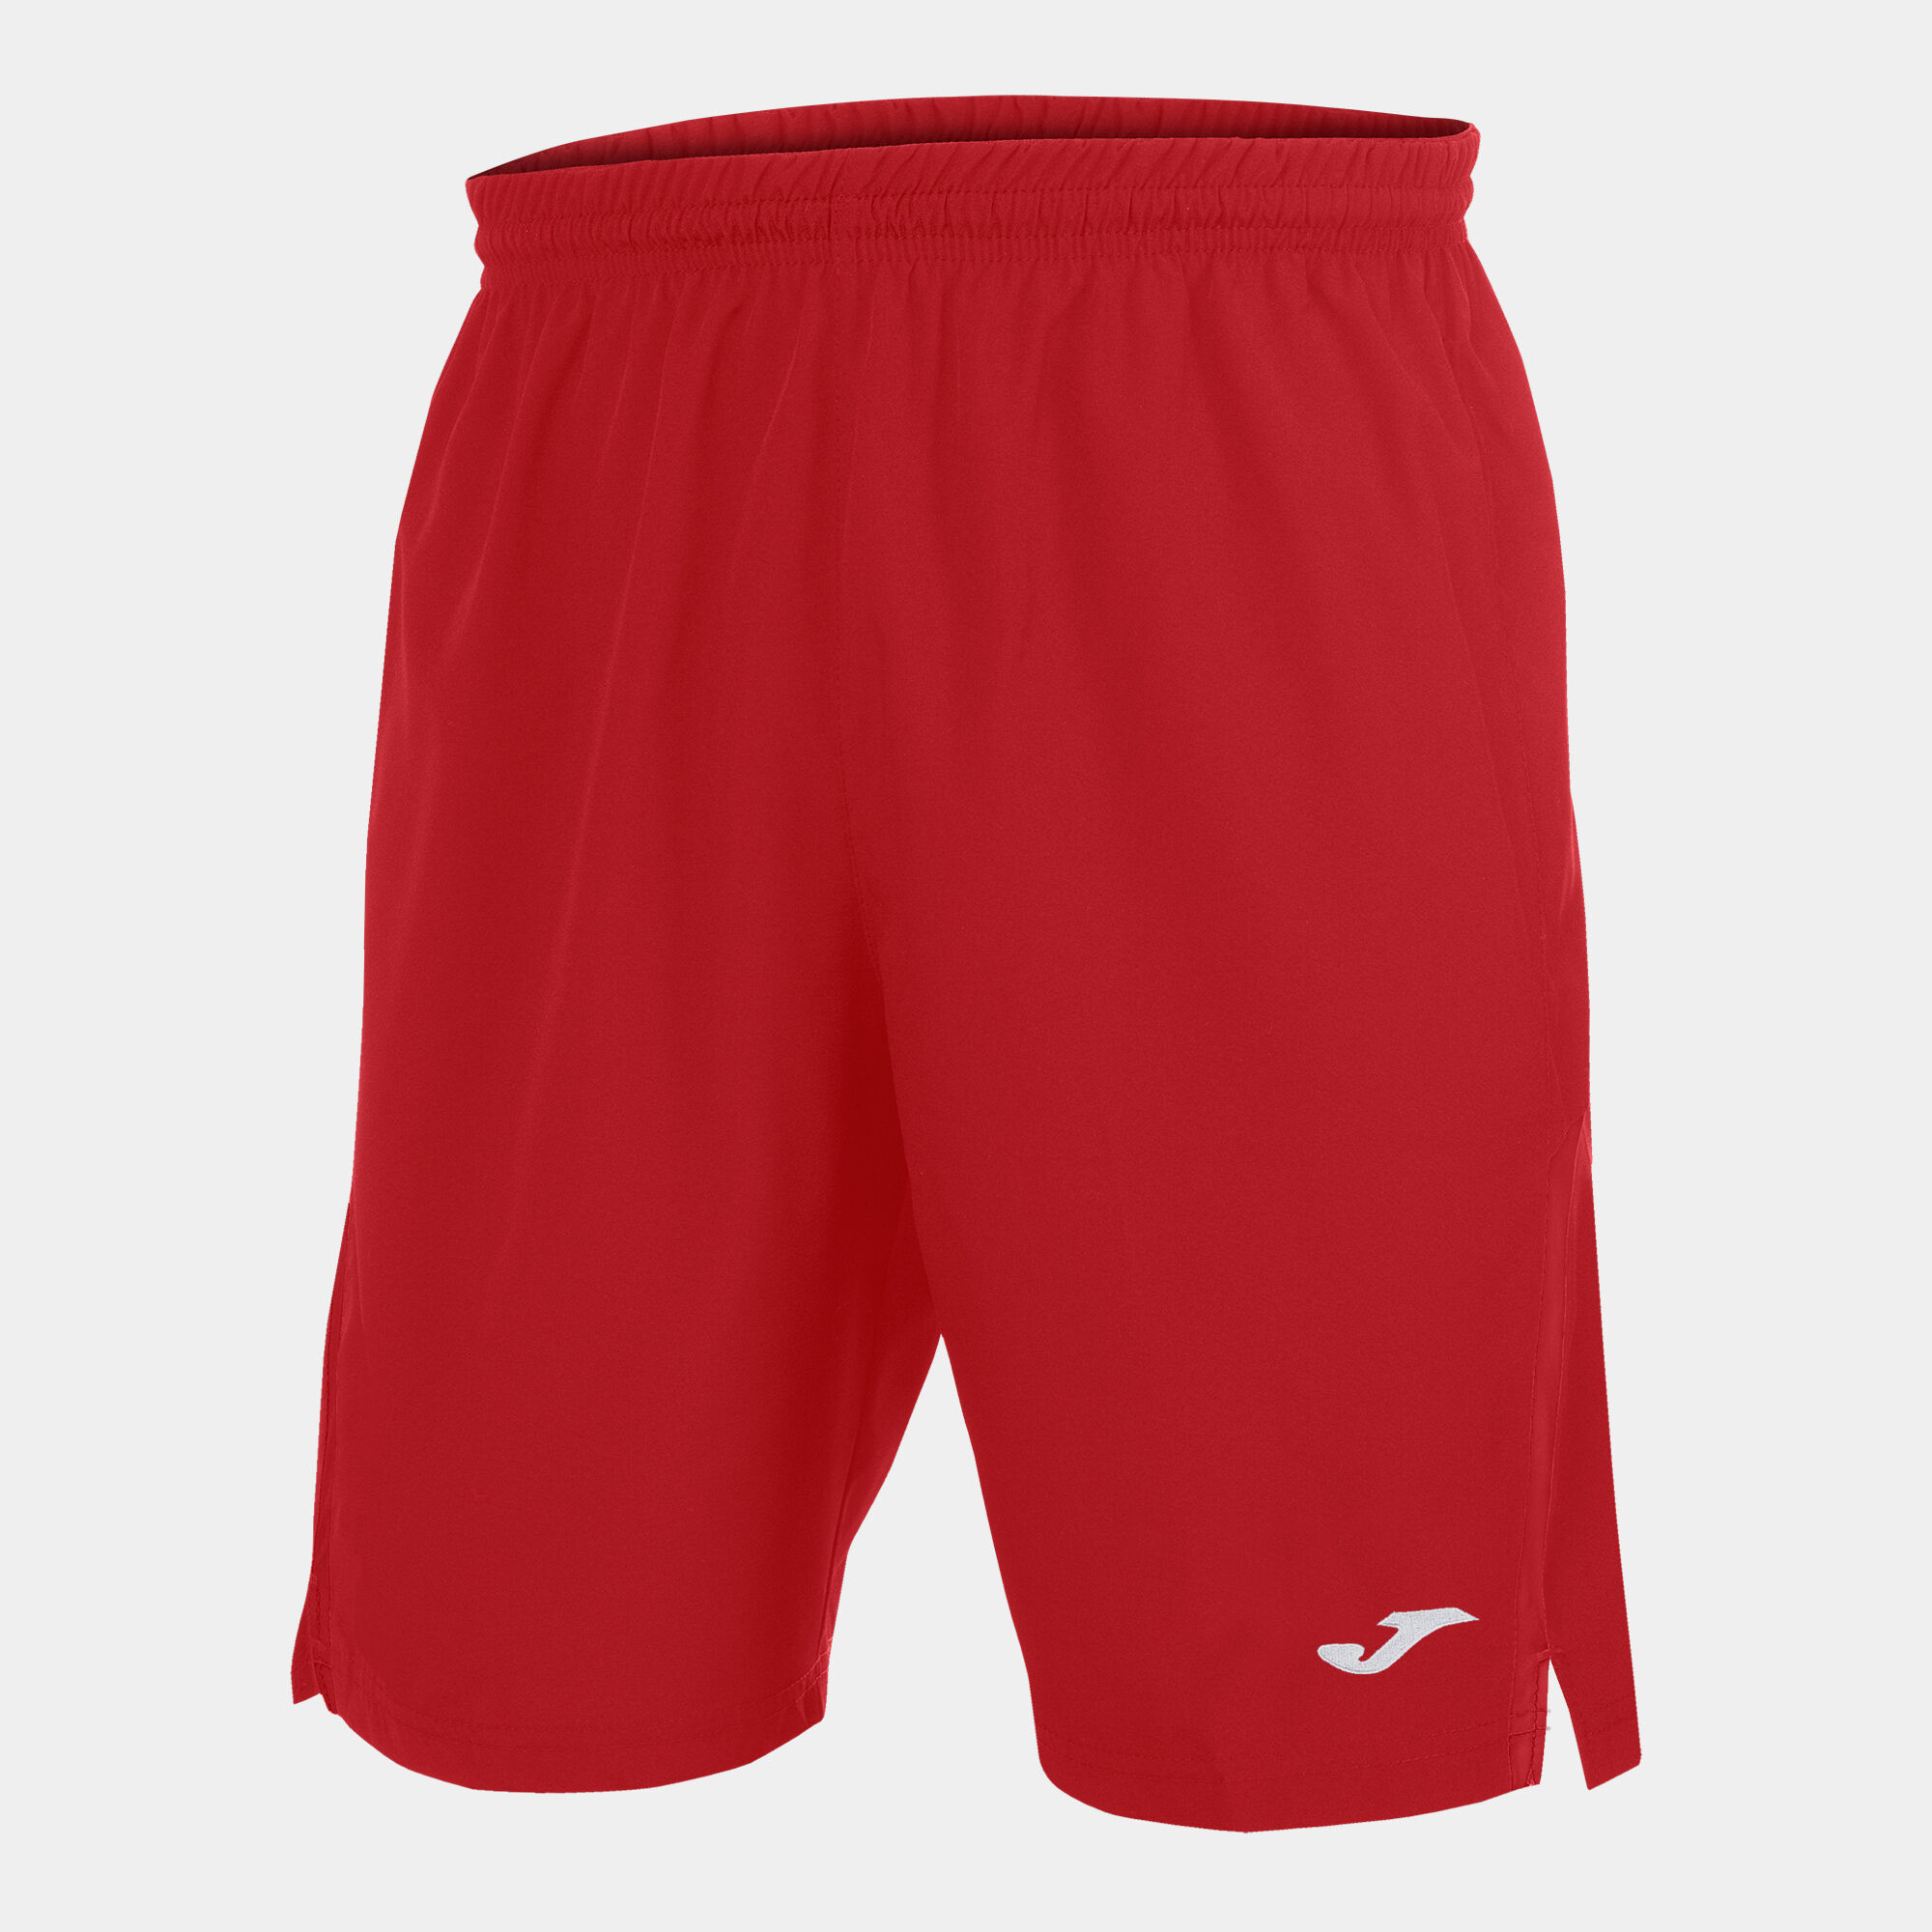 Shorts man Eurocopa II red